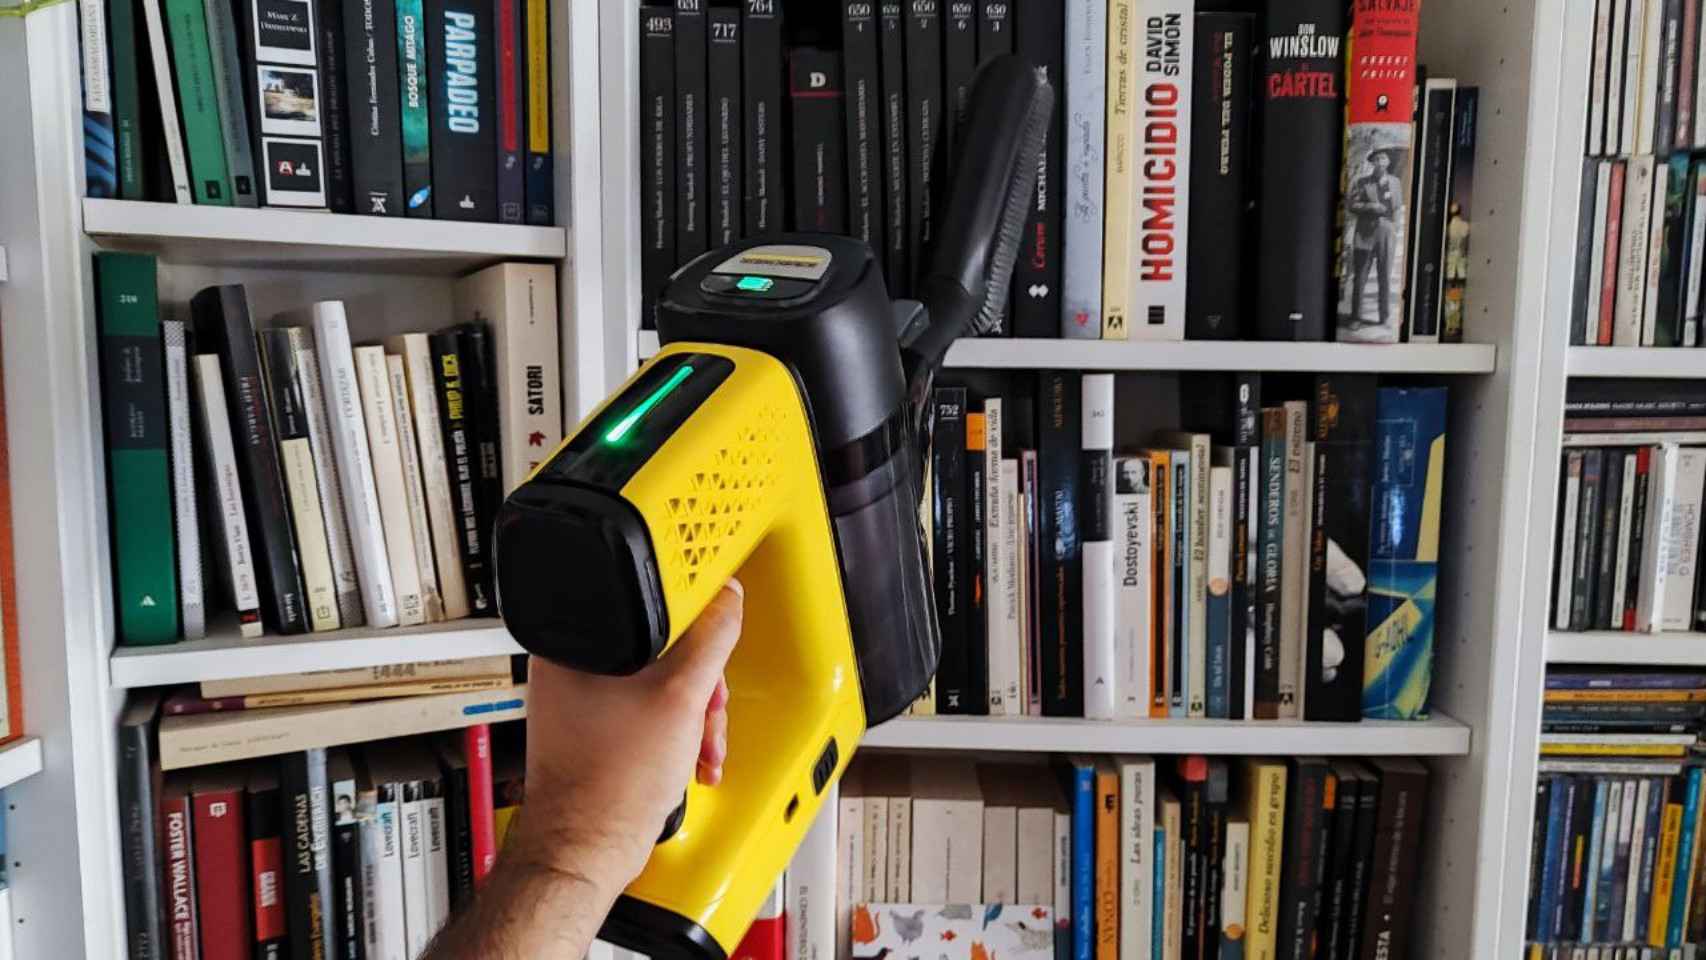 Uno de los accesorios de la Kärcher VC 7, ideal para quitar el polvo de los libros